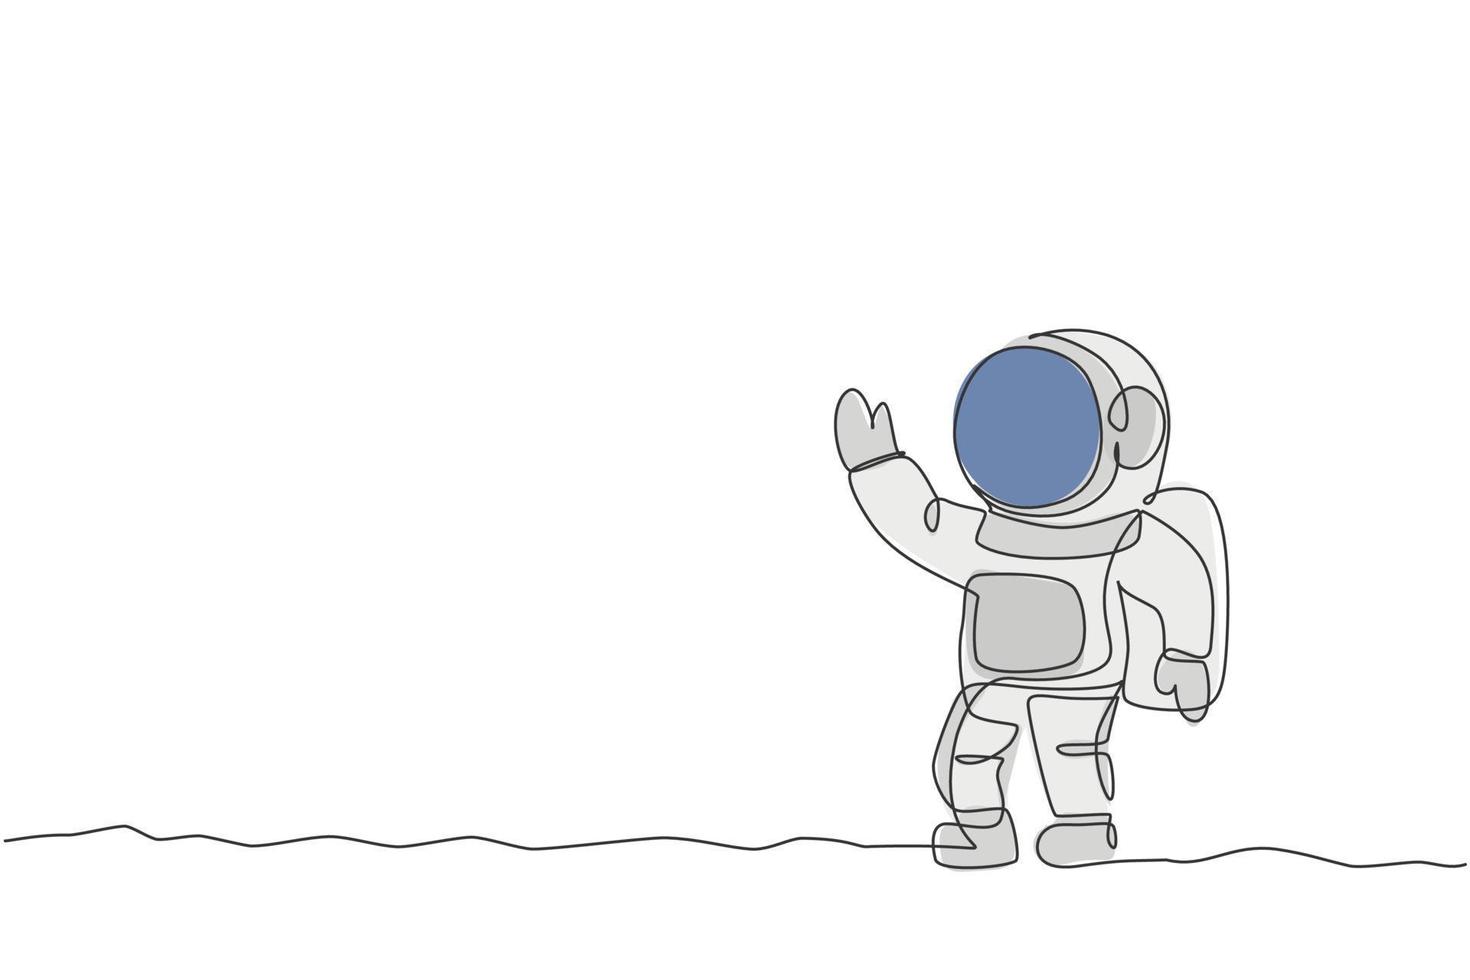 un disegno a tratteggio del giovane astronauta in tuta spaziale che vola all'illustrazione grafica vettoriale dello spazio esterno. concetto di spazio galattico avventura astronauta. design moderno a linea continua